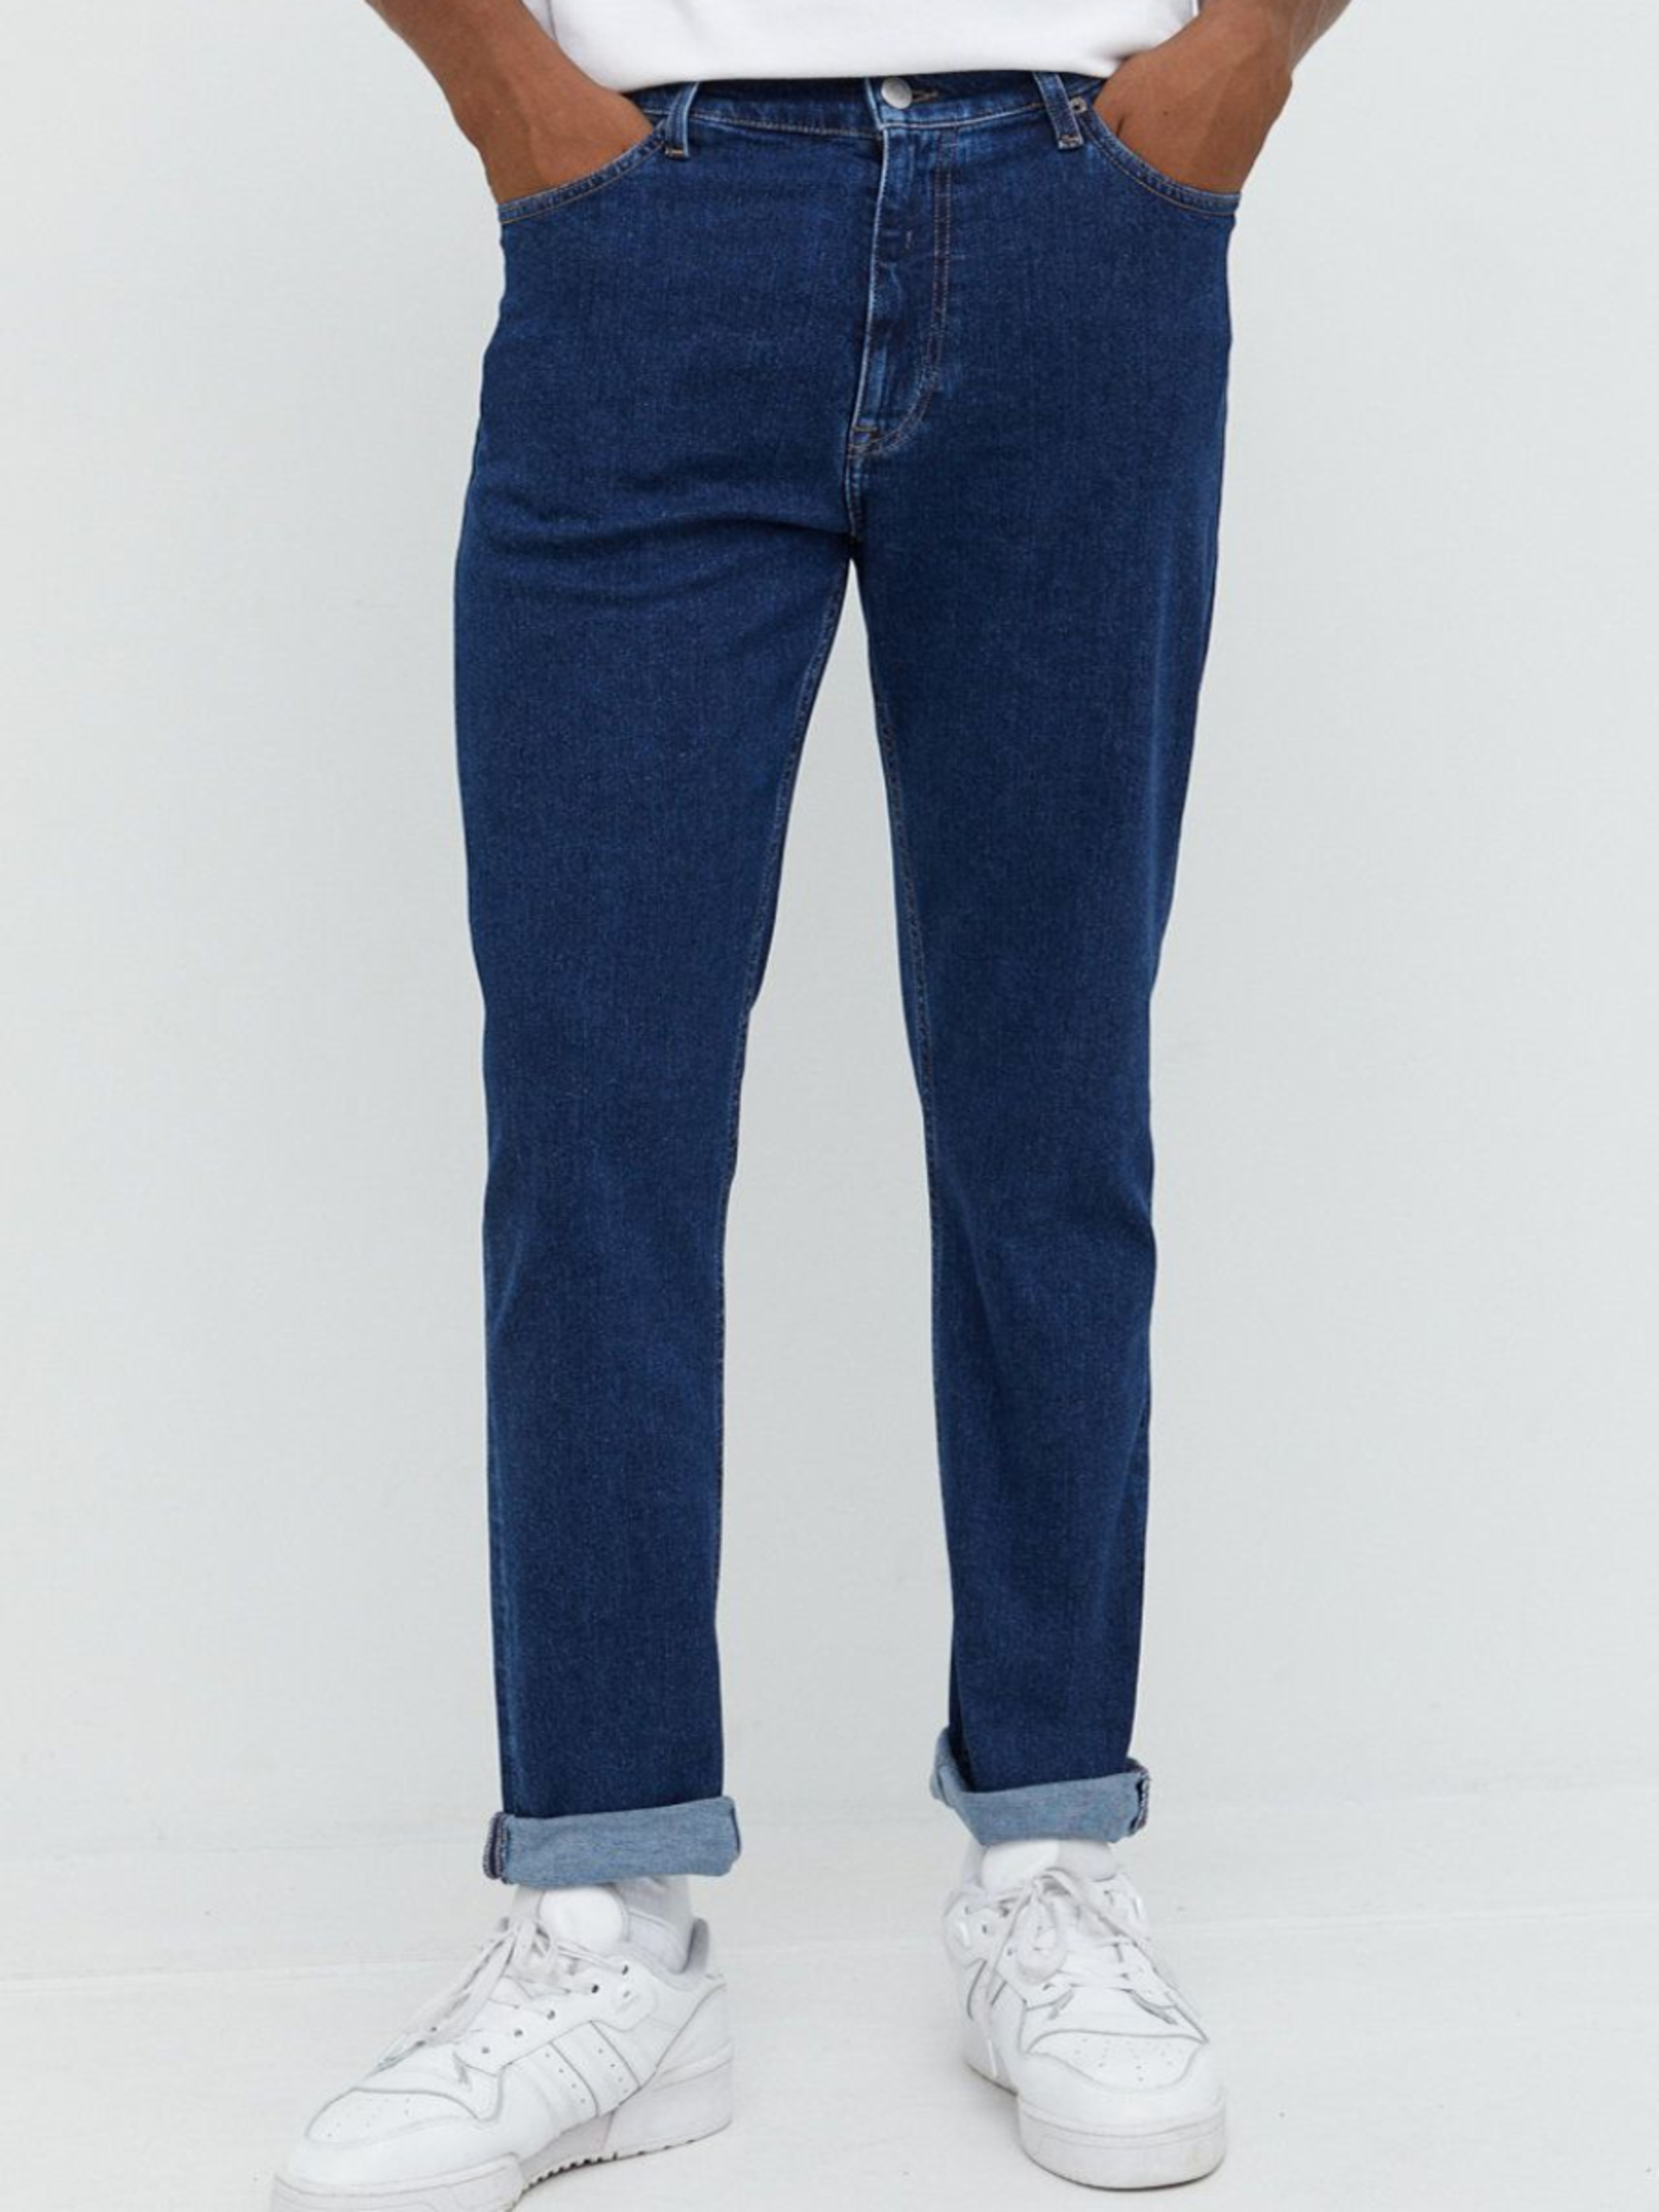 Tommy Jeans pánské modré džíny DAD JEAN - 32/32 (1BK)